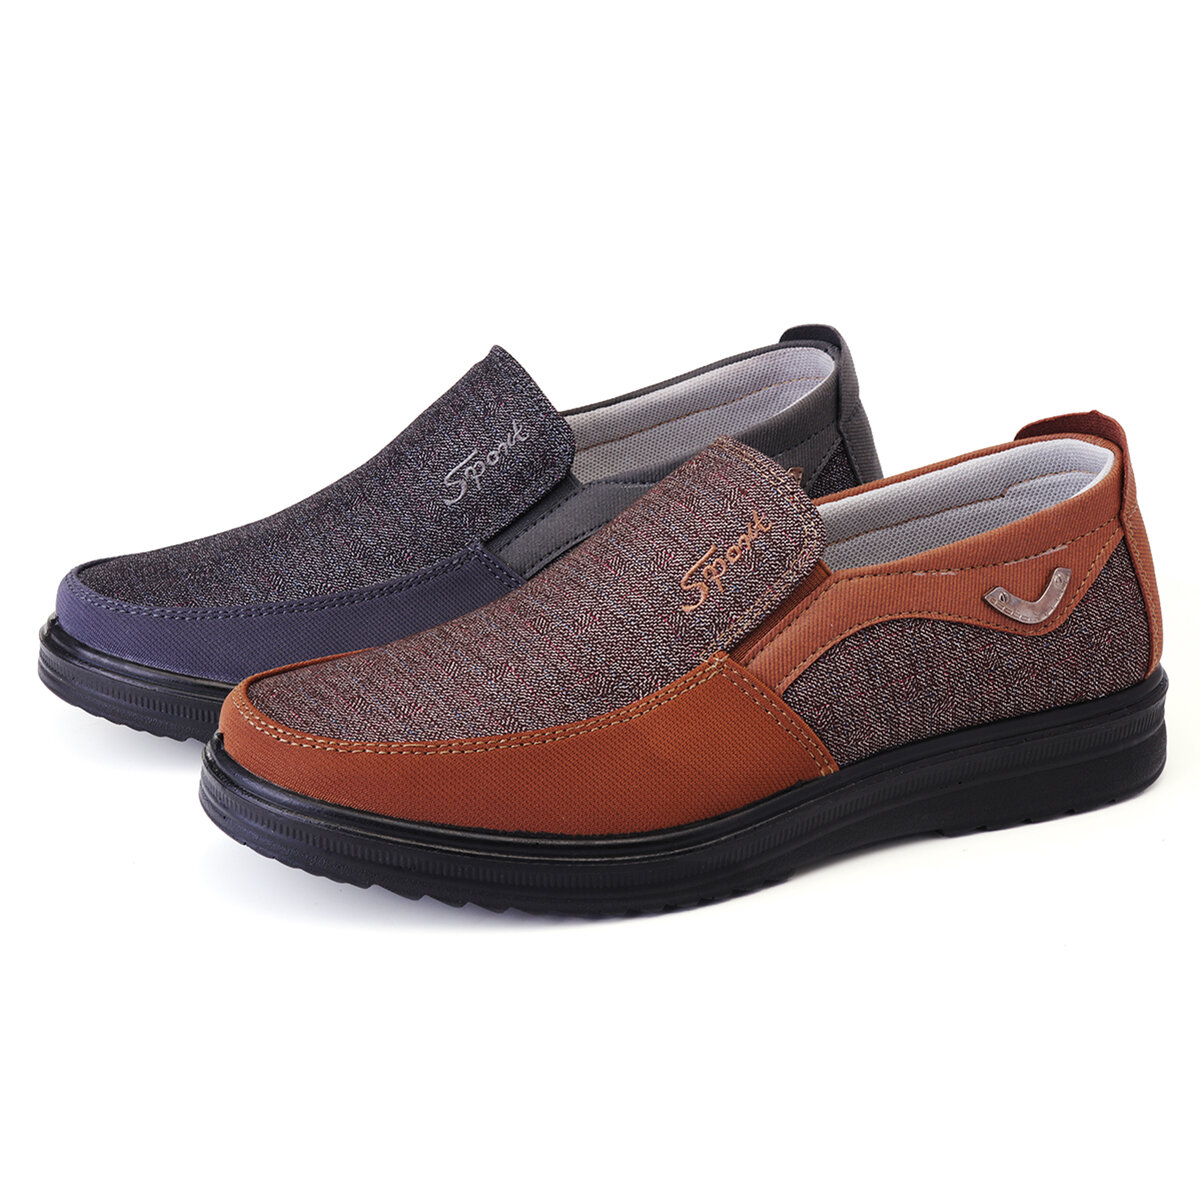 Erkekler için Deri Yuvarlak Burunlu Ayakkabılar Kaymaz Nefes Alabilen Açık Hava Yürüyüşü Düz Ayakkabılar.